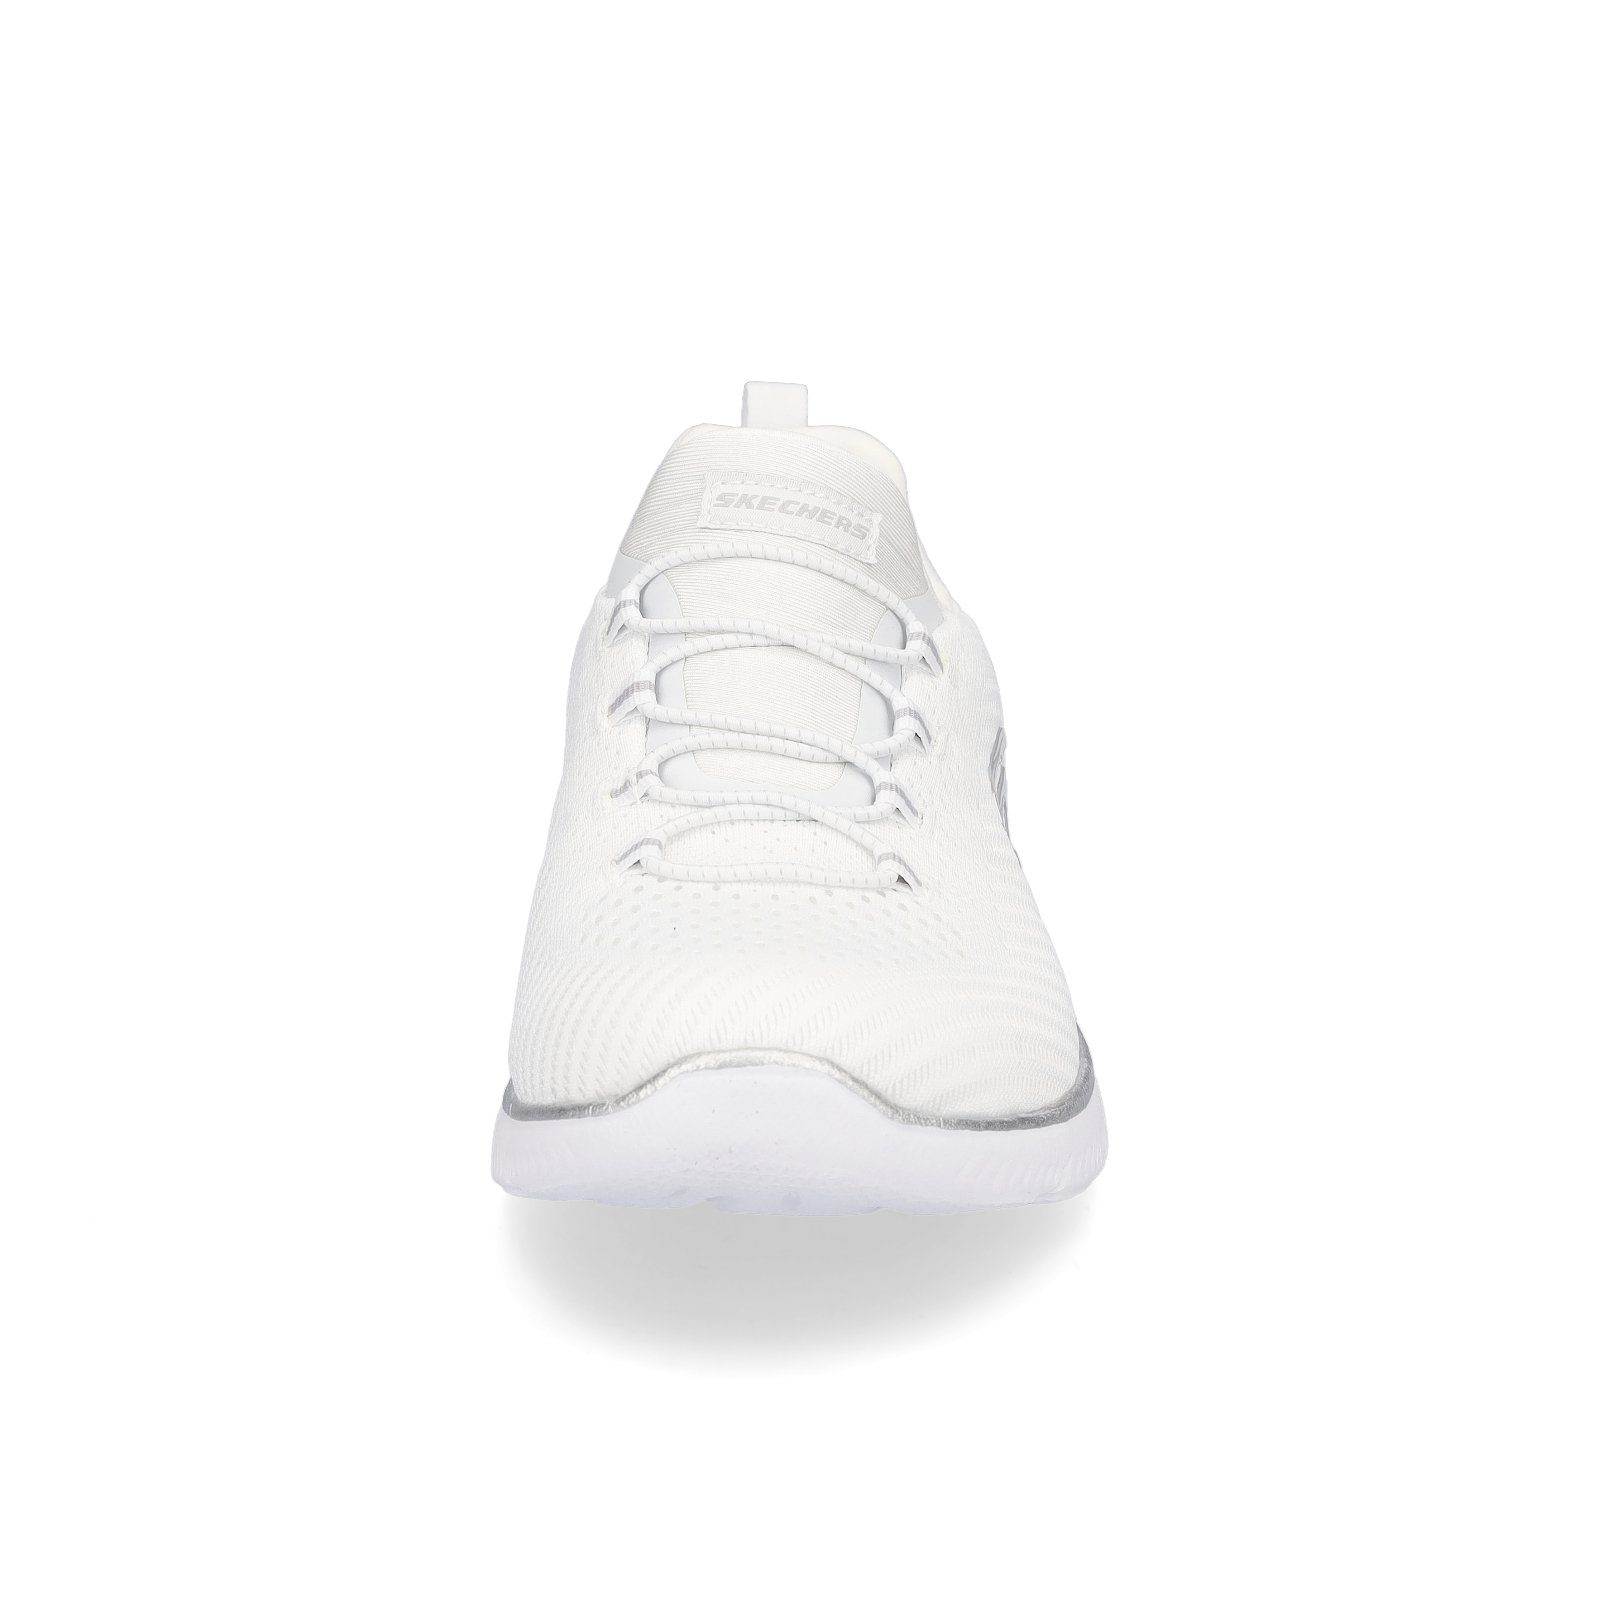 Skechers Skechers Damen Sneaker Fast weiß Weiß (20202251) Attraction (White) Sneaker